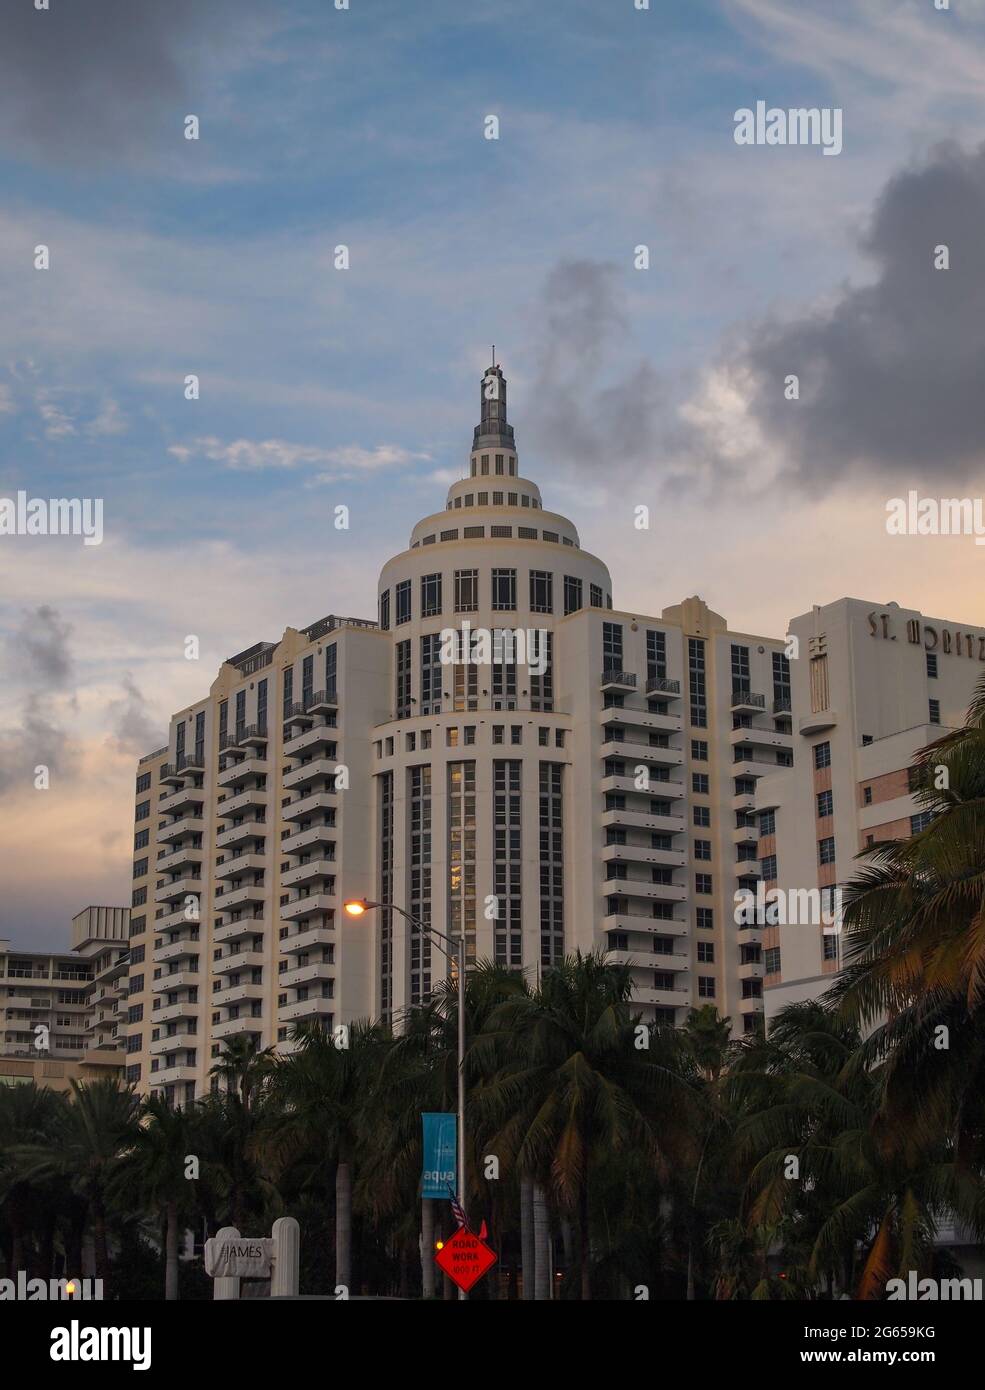 MIAMI, FLORIDA - 12. NOVEMBER 2012: Das original Art Deco 1939 St. Moritz Hotel wurde renoviert und in das Loews Beach Miami Hotel eingebettet Stockfoto